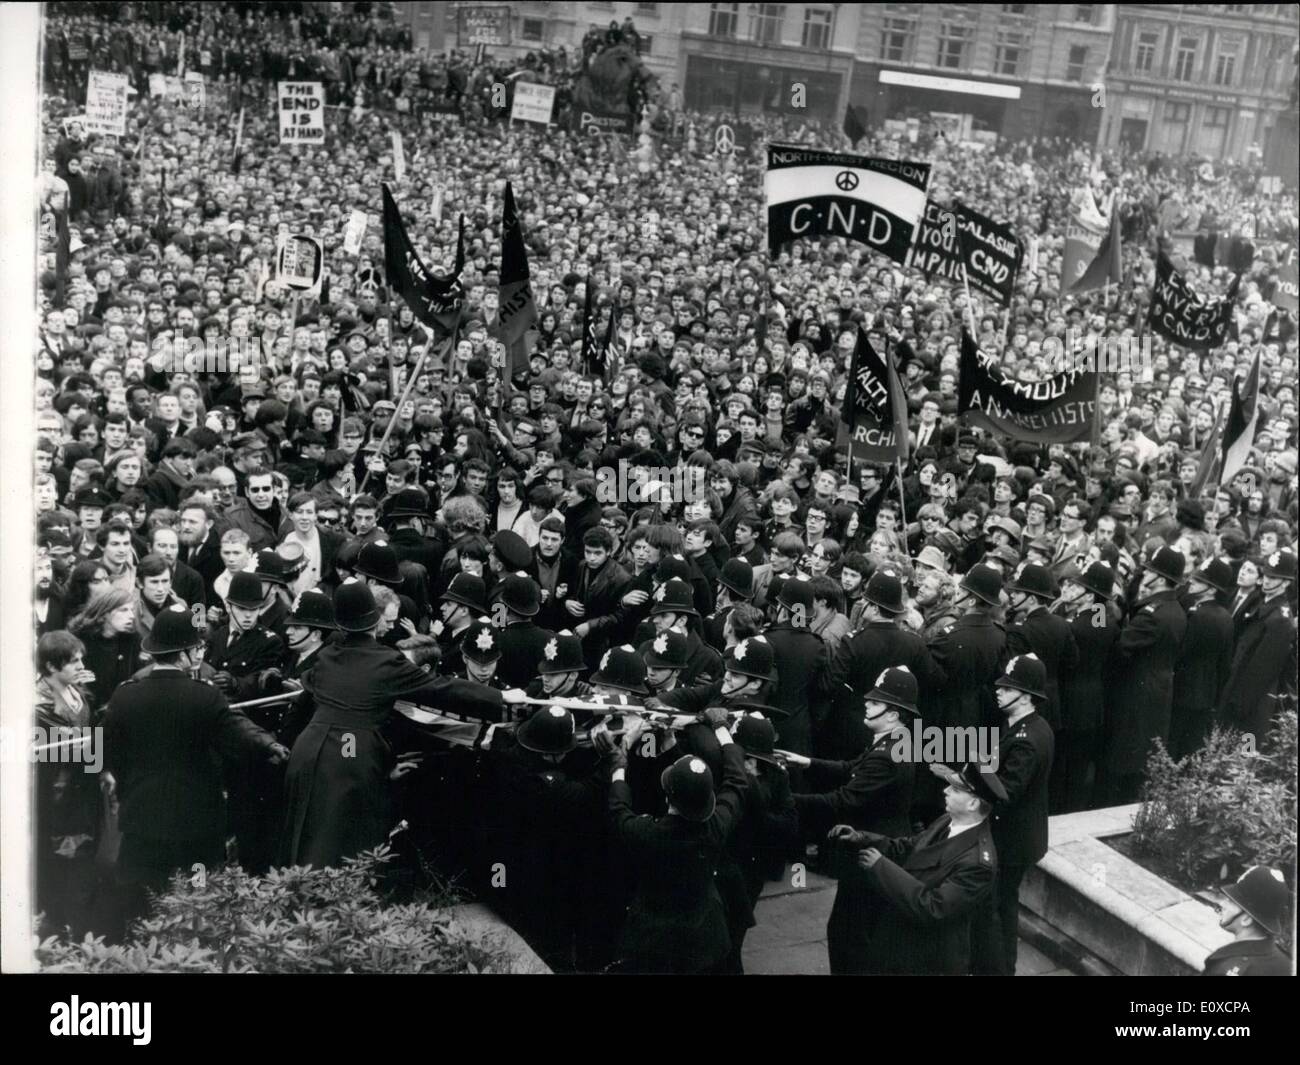 Apr. 04, 1966 - Polizia scontro con i dimostranti durante C.N.D. Pasqua rally in Trafalgar Square.: le forze di polizia si sono scontrati con manifestanti durante la campagna per il disarmo nucleare Pasqua rally tenutasi a Trafalgar Square a seguito della loro marzo da alta Wyoombe oltre il fine settimana. la mostra fotografica di polizia si vede alle prese con uno dei manifestanti come chiave hanno subito il suo banner. Foto Stock